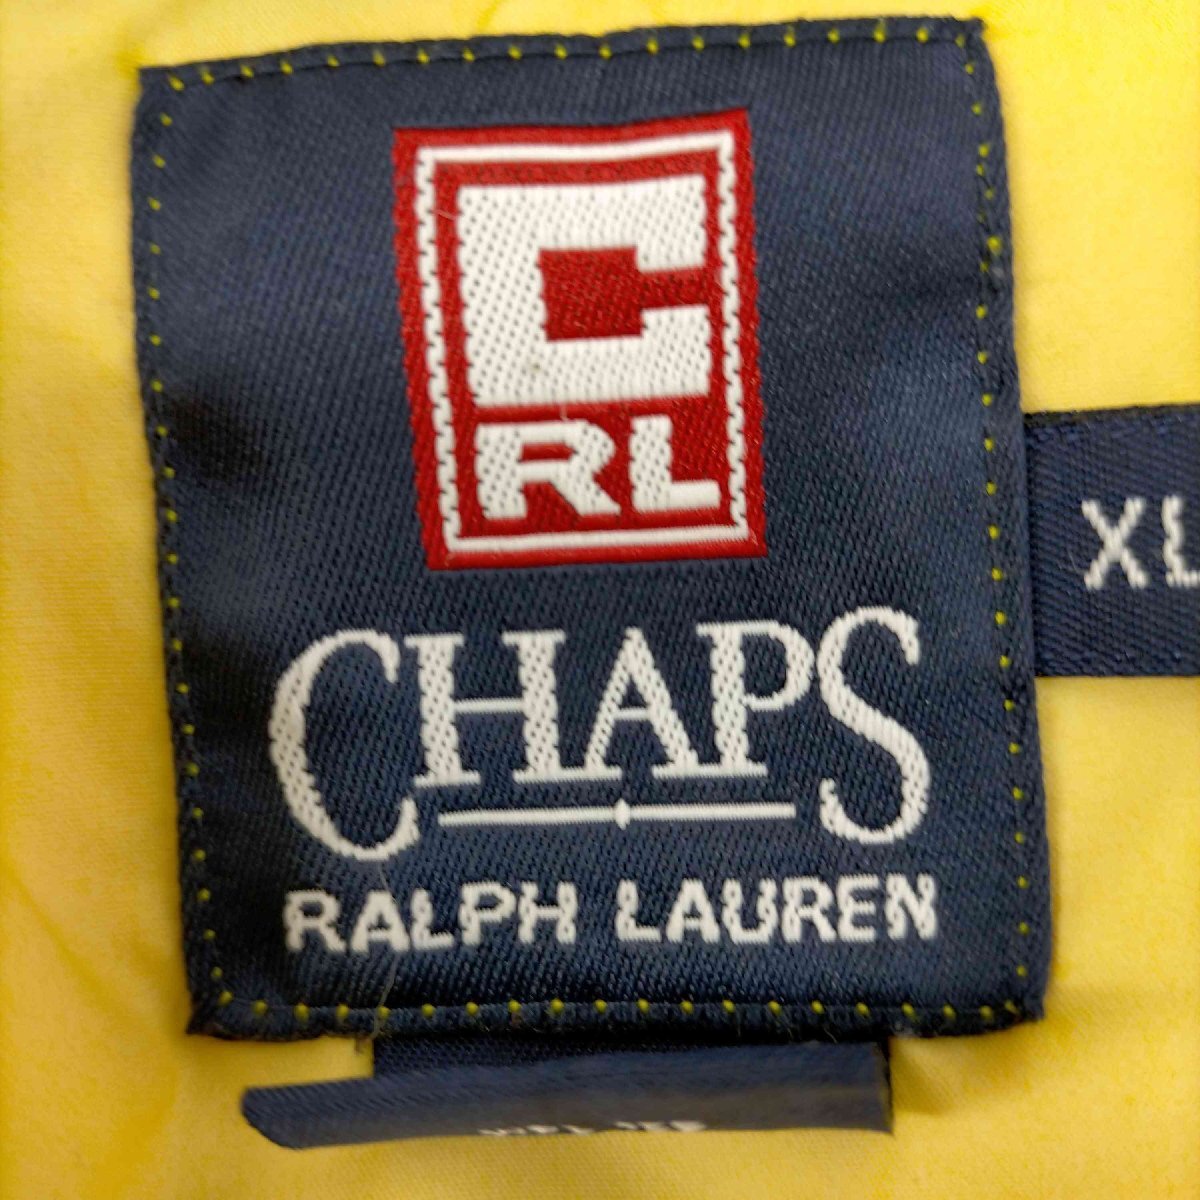 CHAPS RALPH LAUREN(チャップスラルフローレン) ロゴ刺繍ナイロンプルオーバー メンズ J 中古 古着 0207_画像6